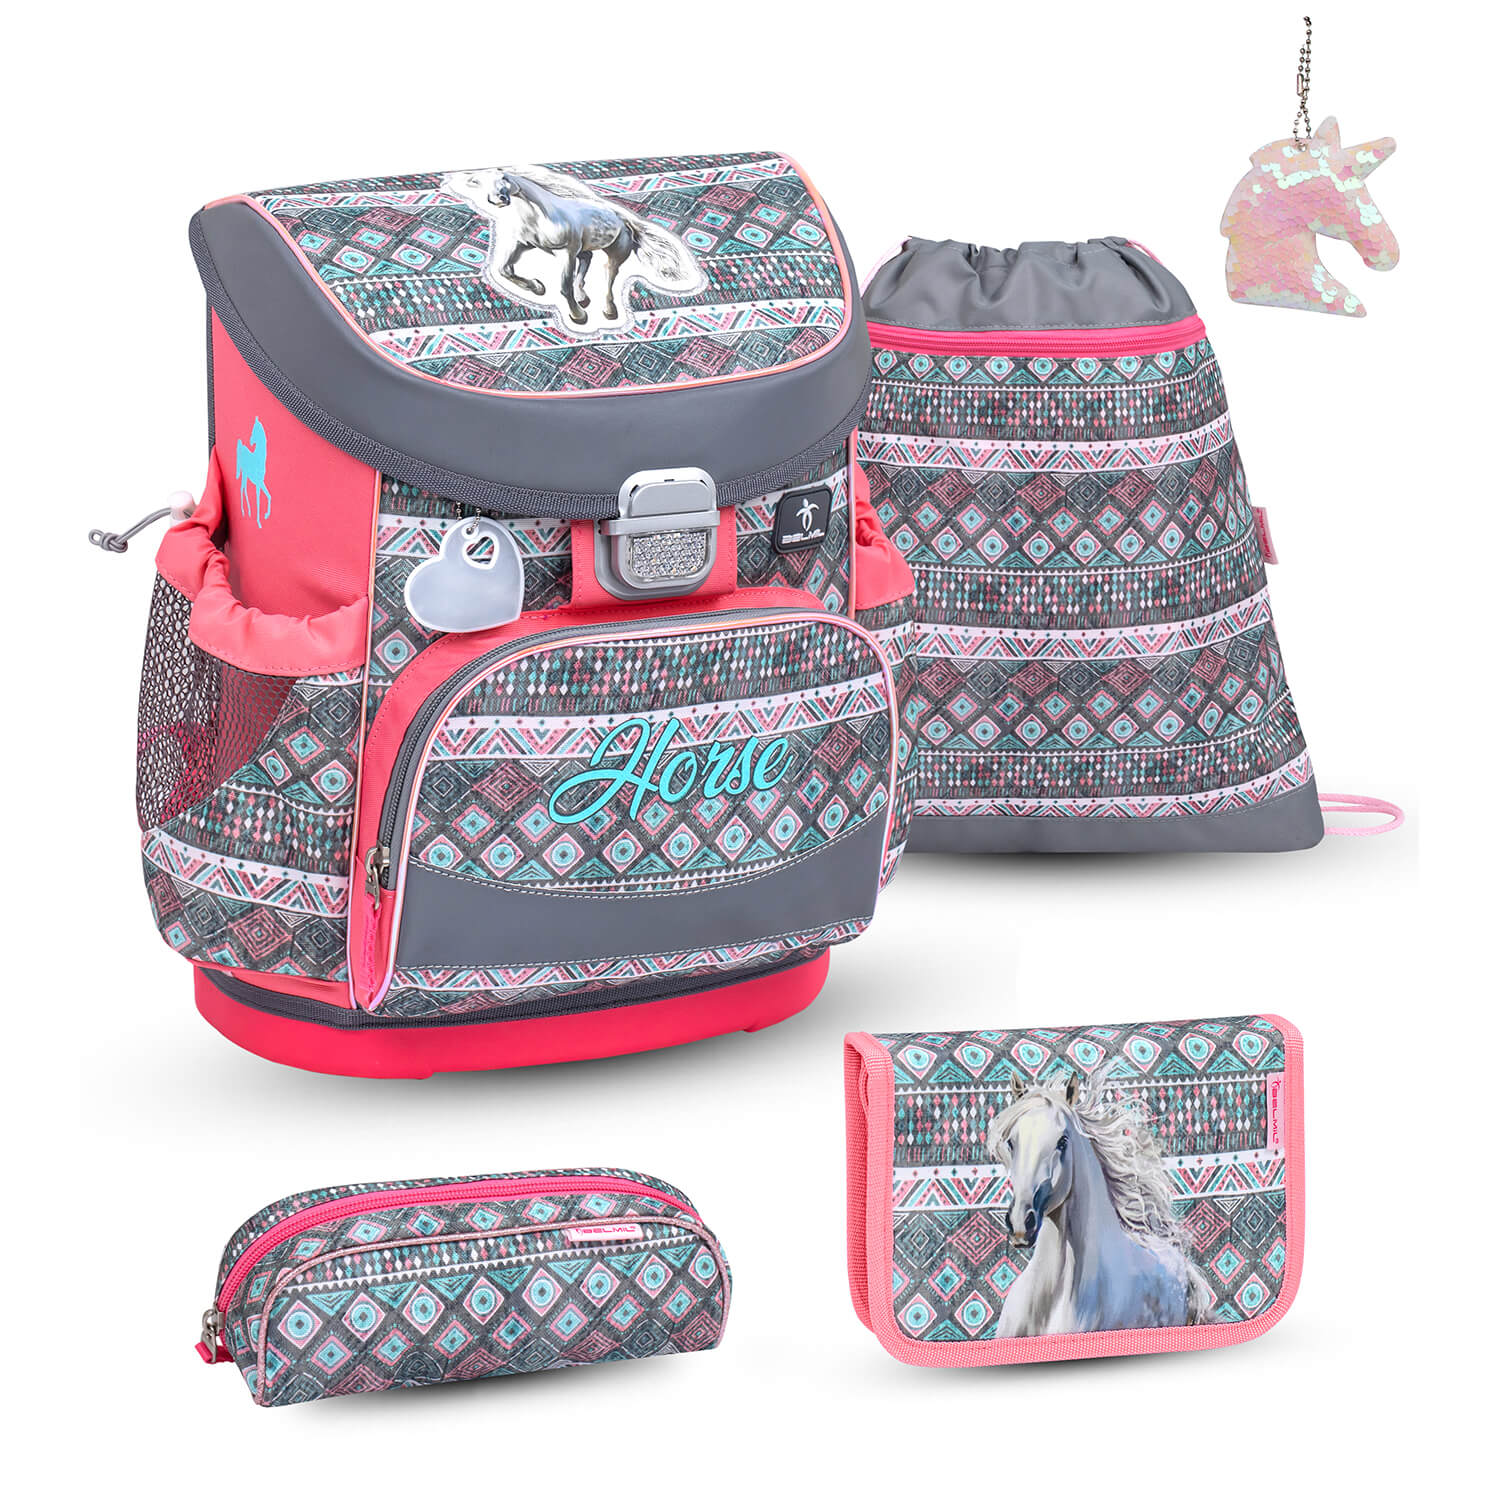 Mini-Fit Horse Aruba Blue schoolbag set 5 pcs with GRATIS keychain